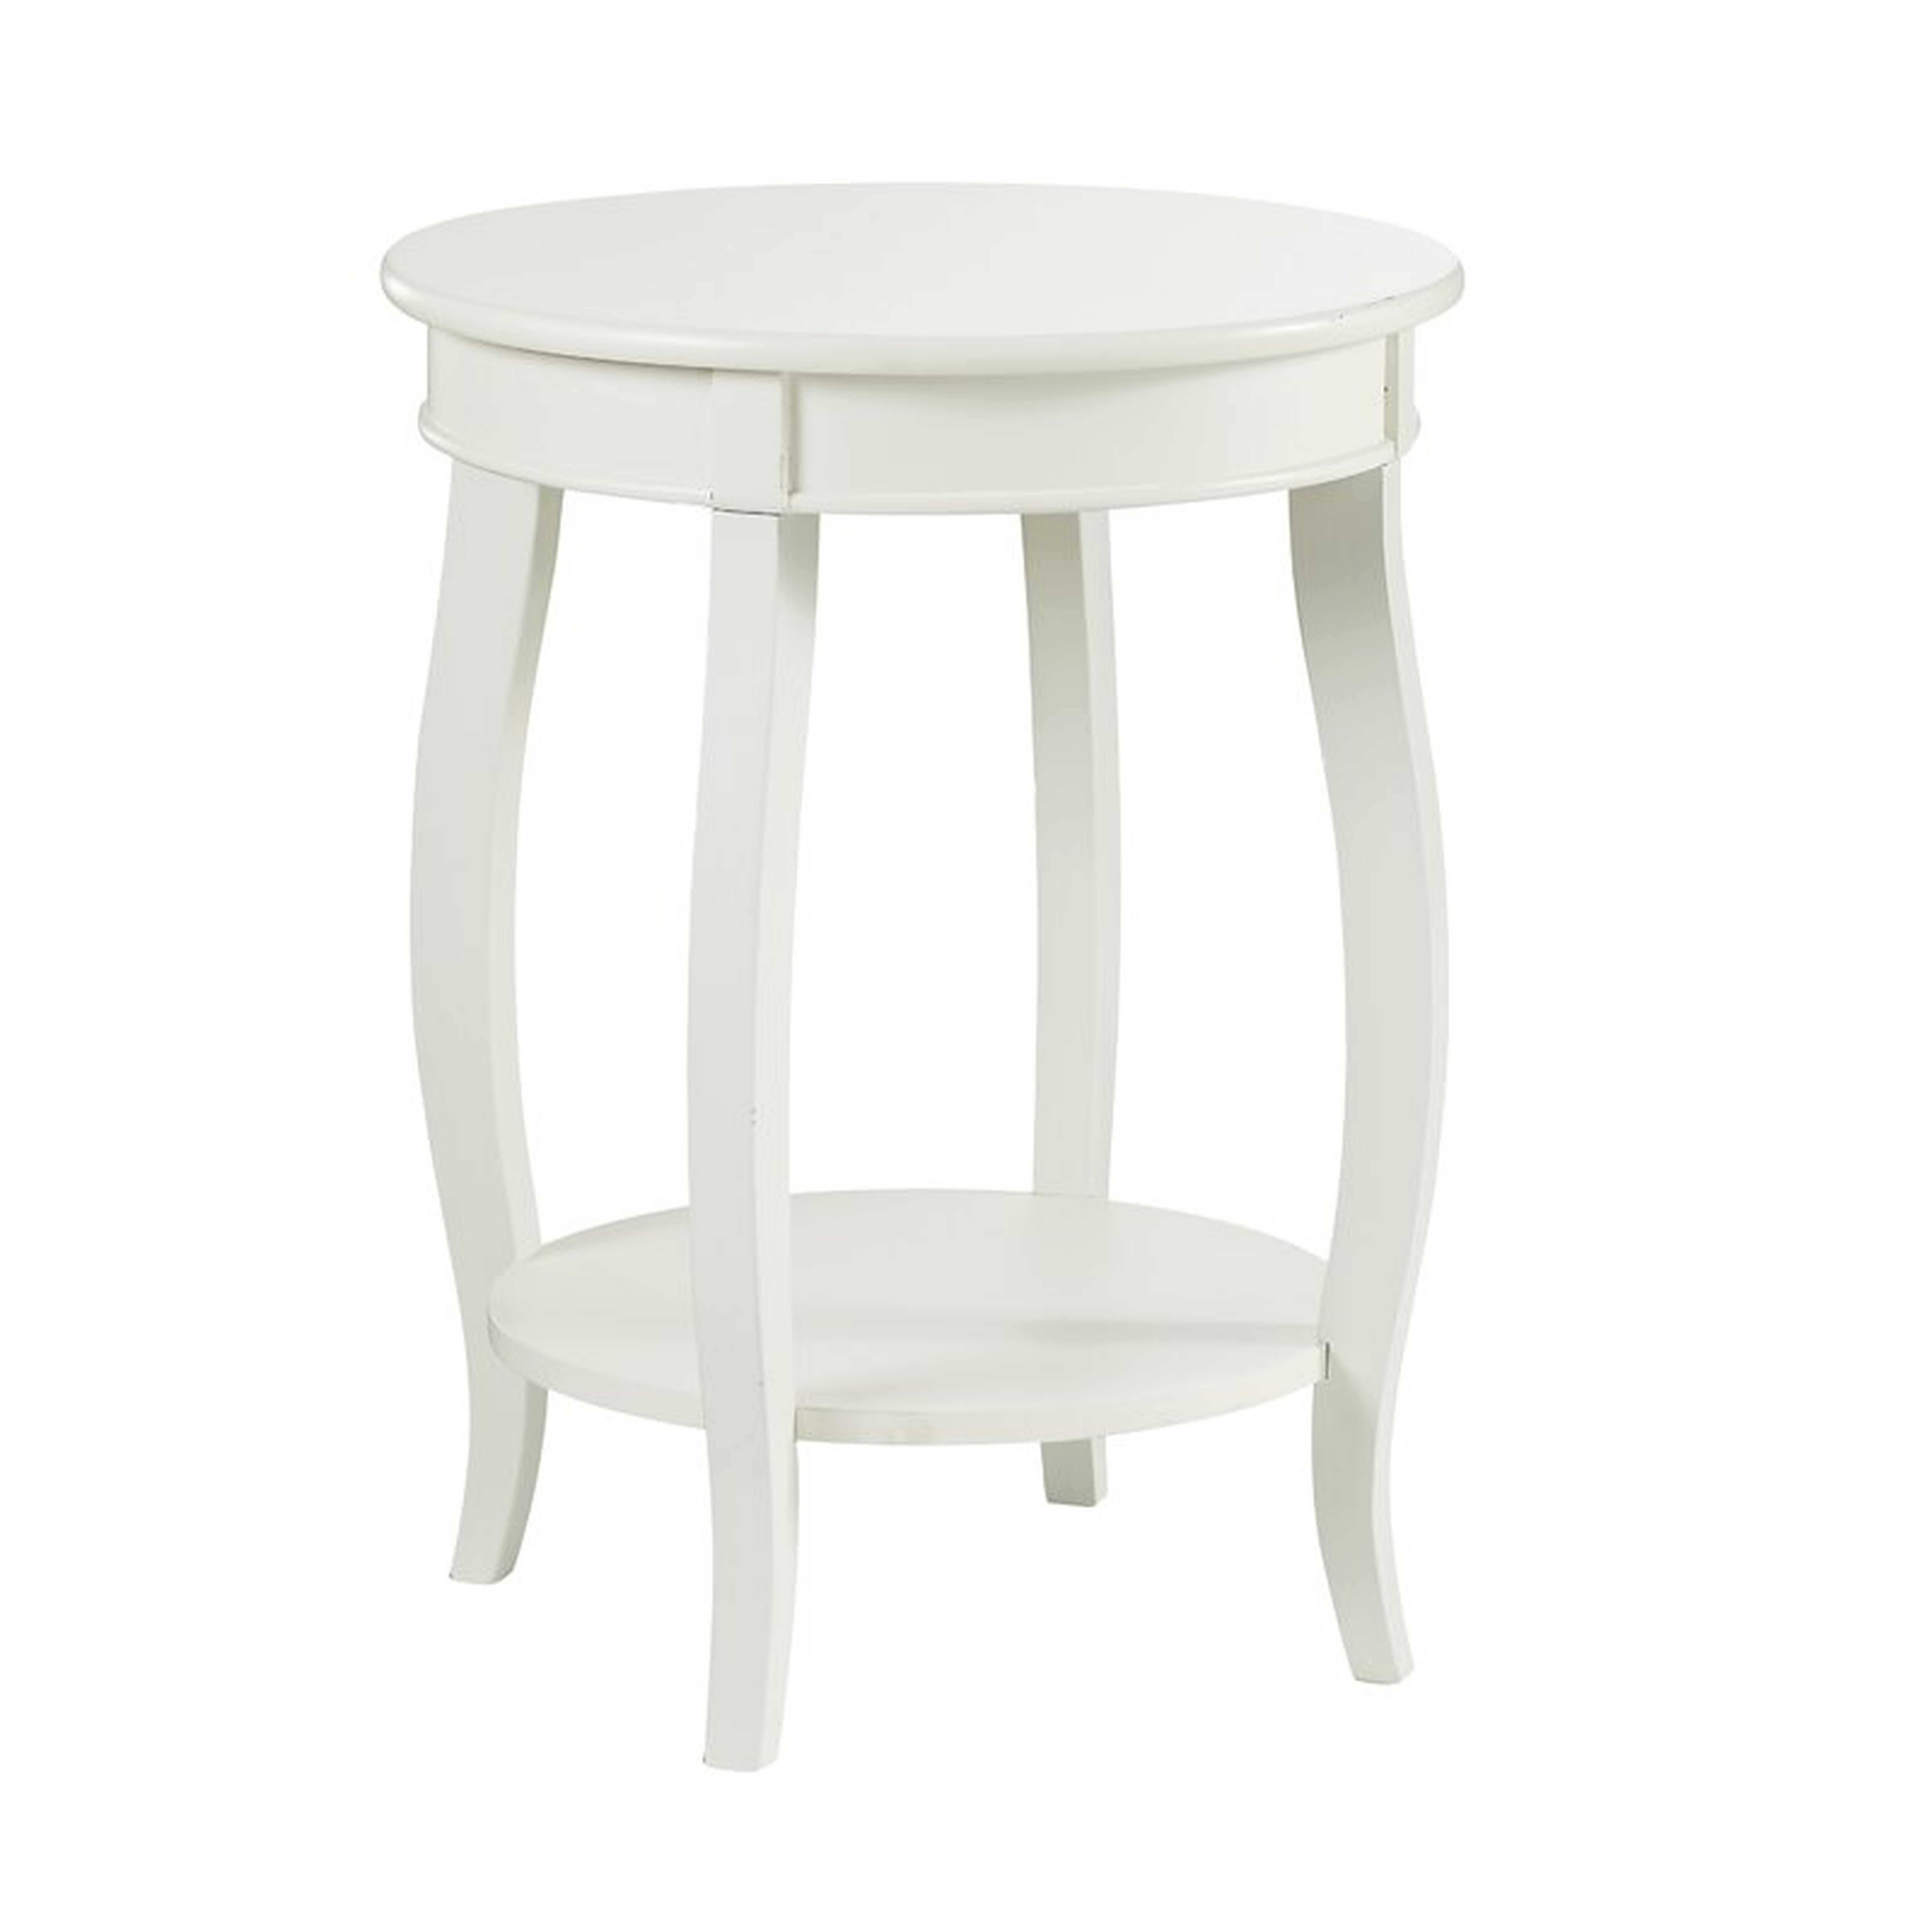 White Callan End Table with Storage / White - Wayfair